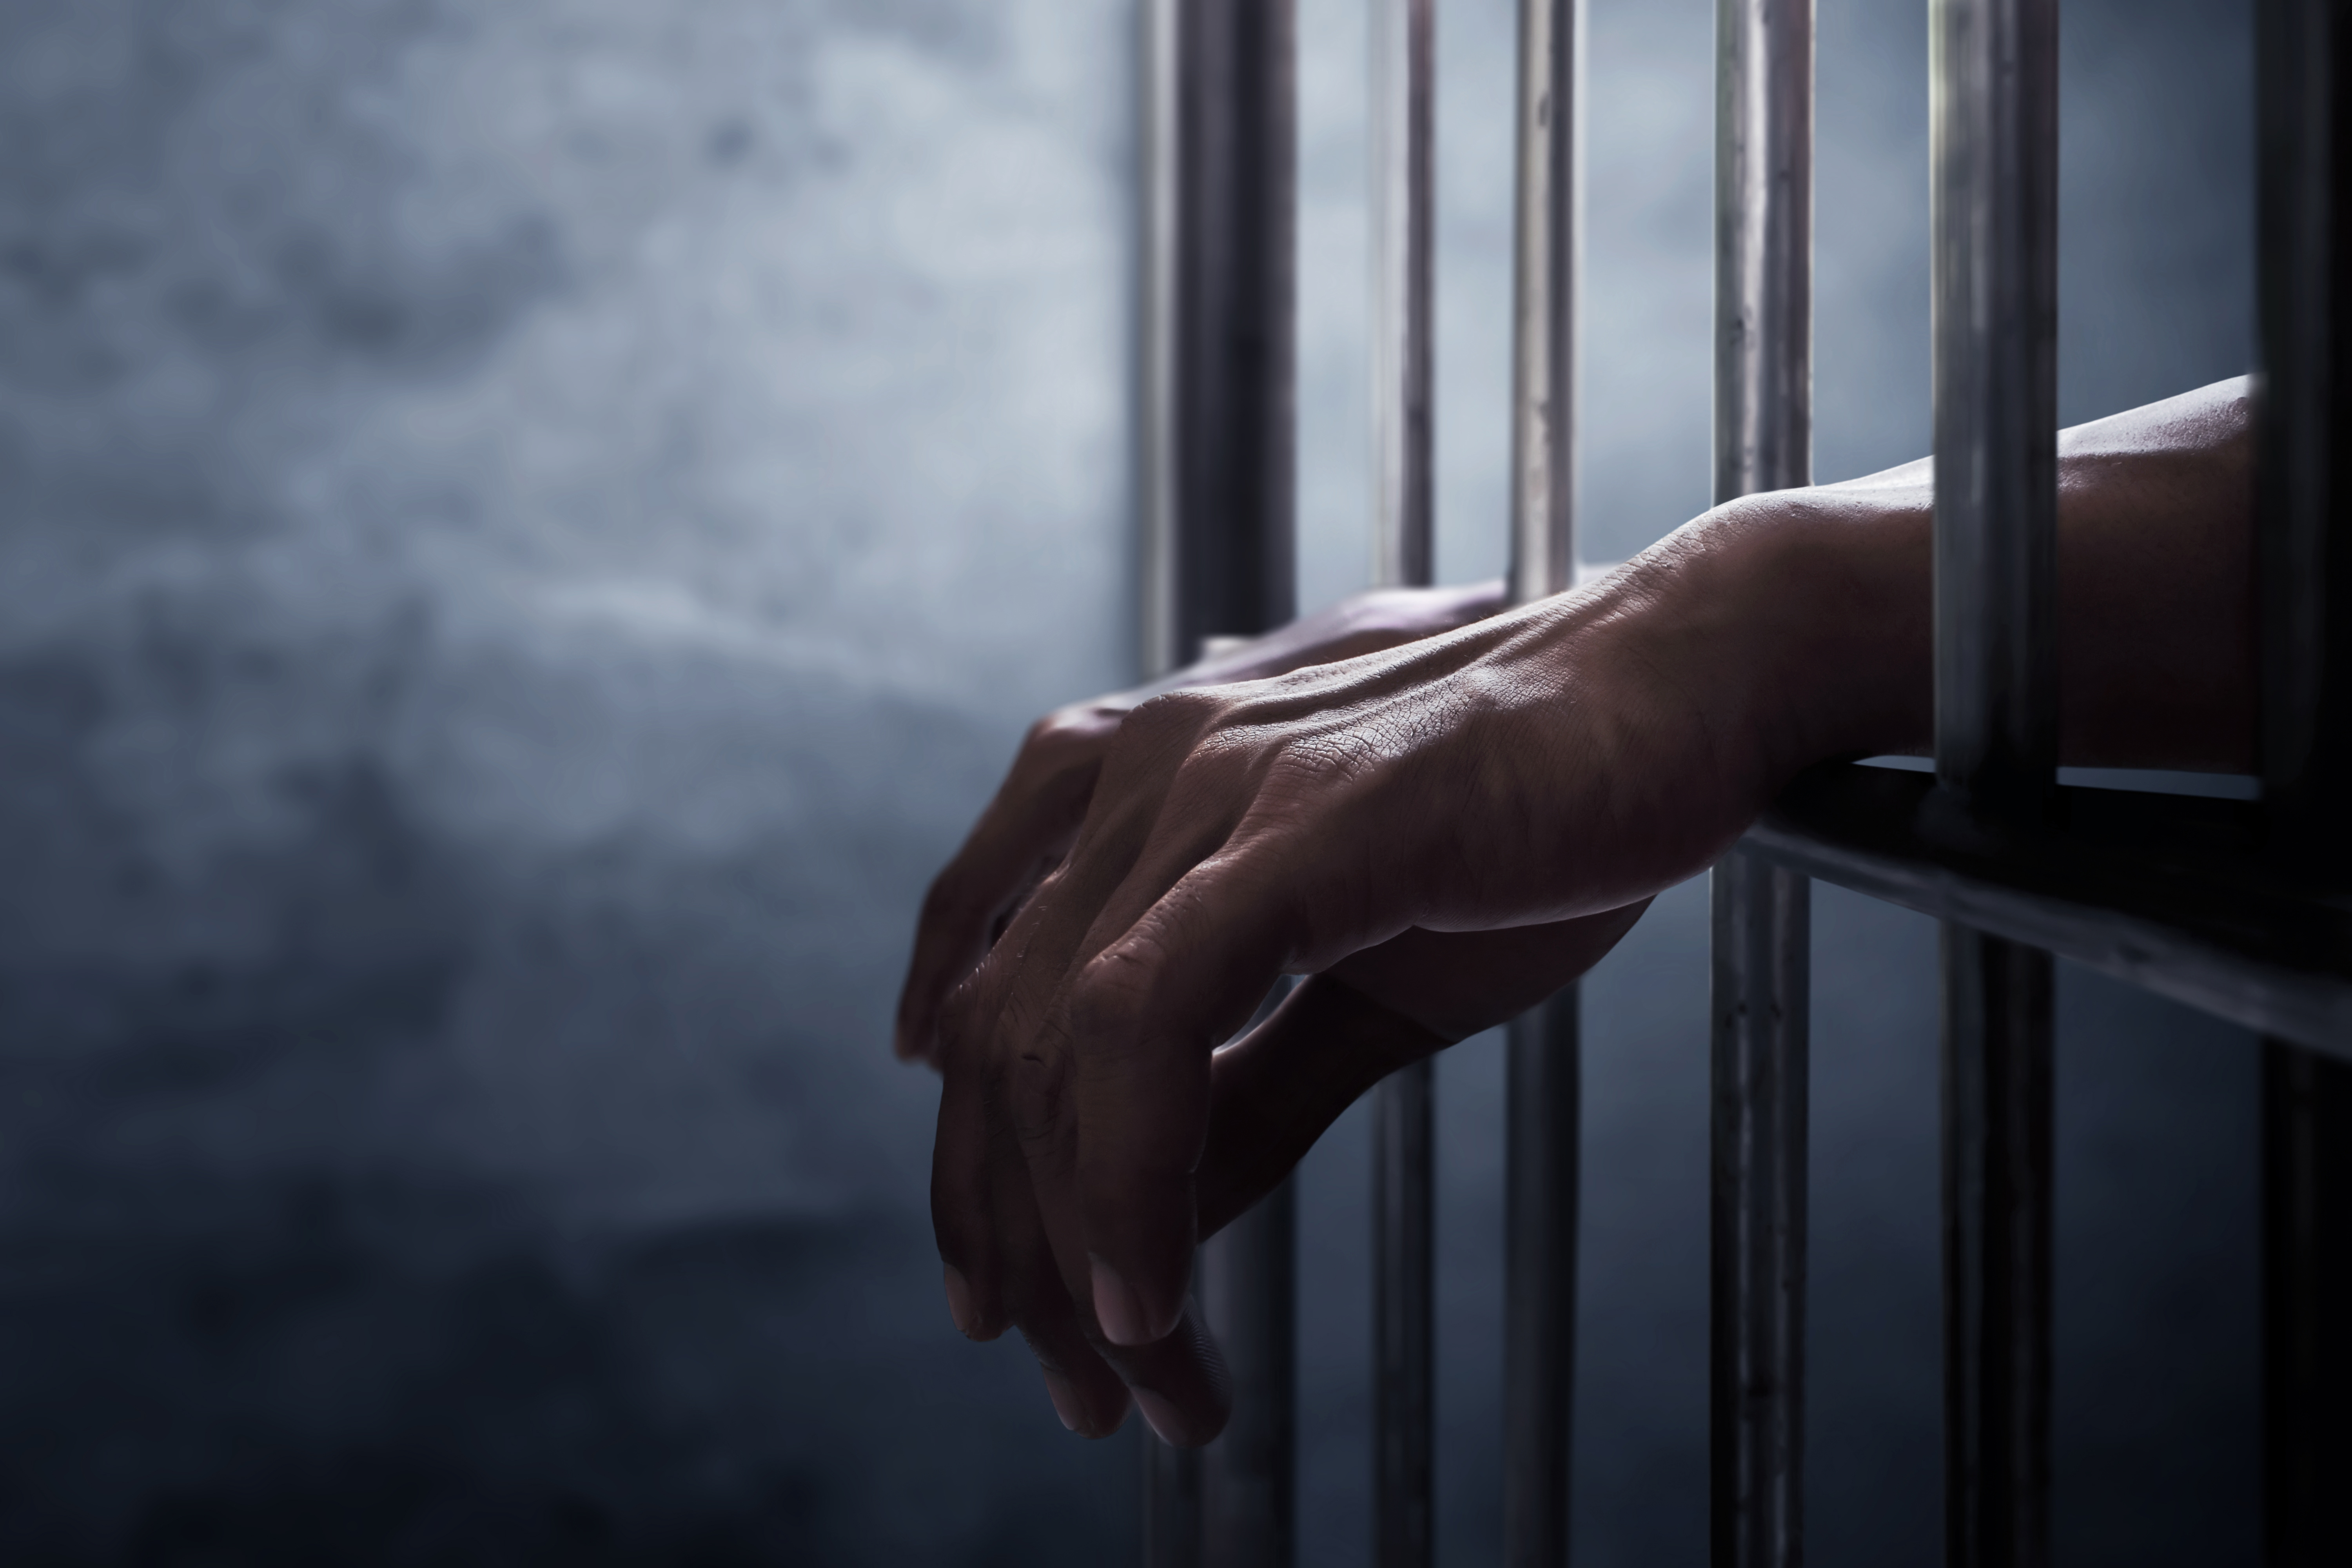 Mann im Gefängnis | Quelle: Shutterstock